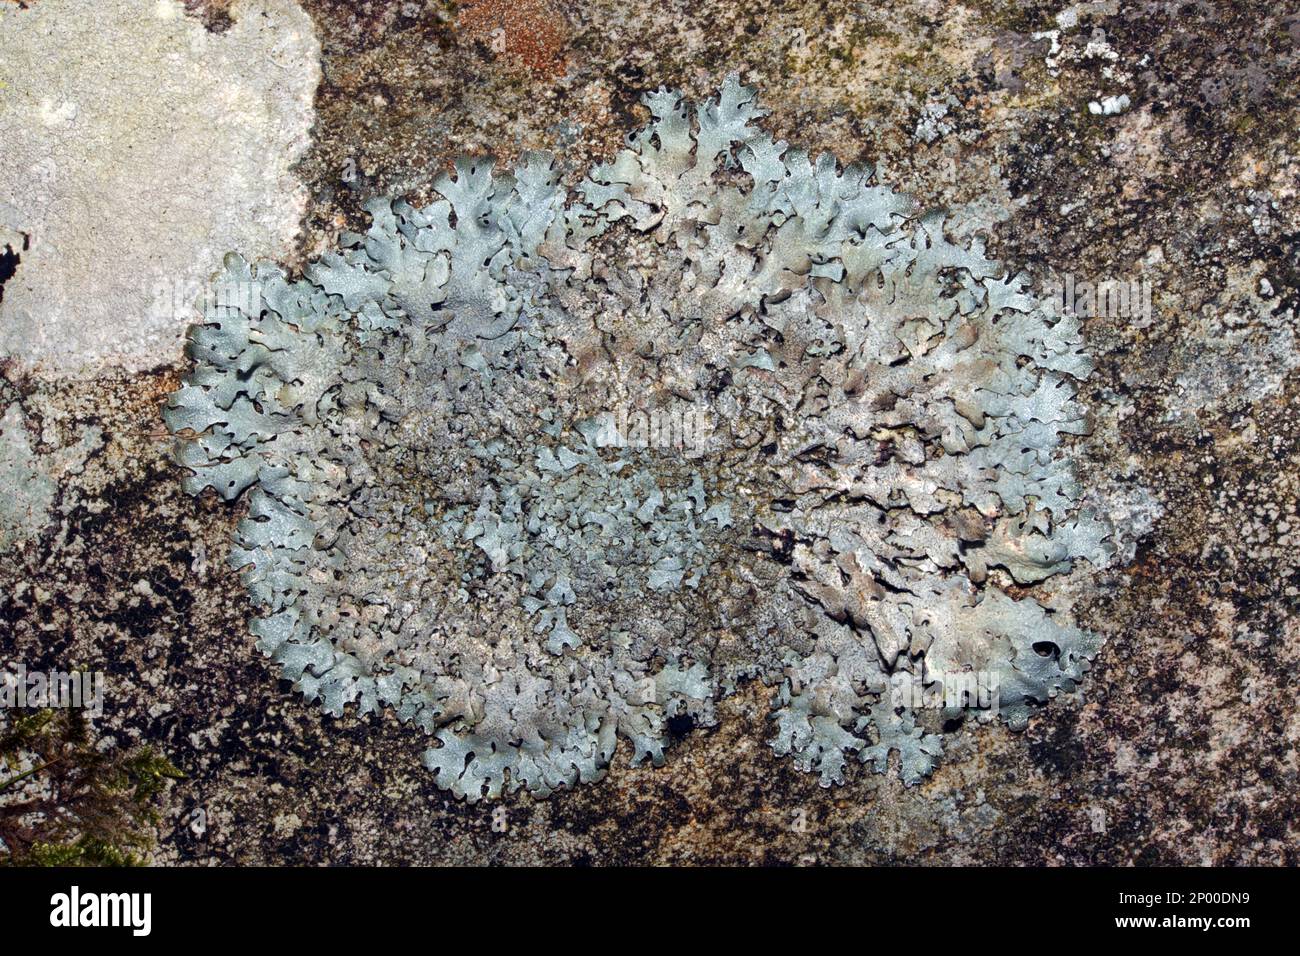 Parmelia saxatilis est commun sur les roches et les arbres aboyés à l'acide. Il est largement distribué dans les zones tempérées et boréales de l'hémisphère nord. Banque D'Images